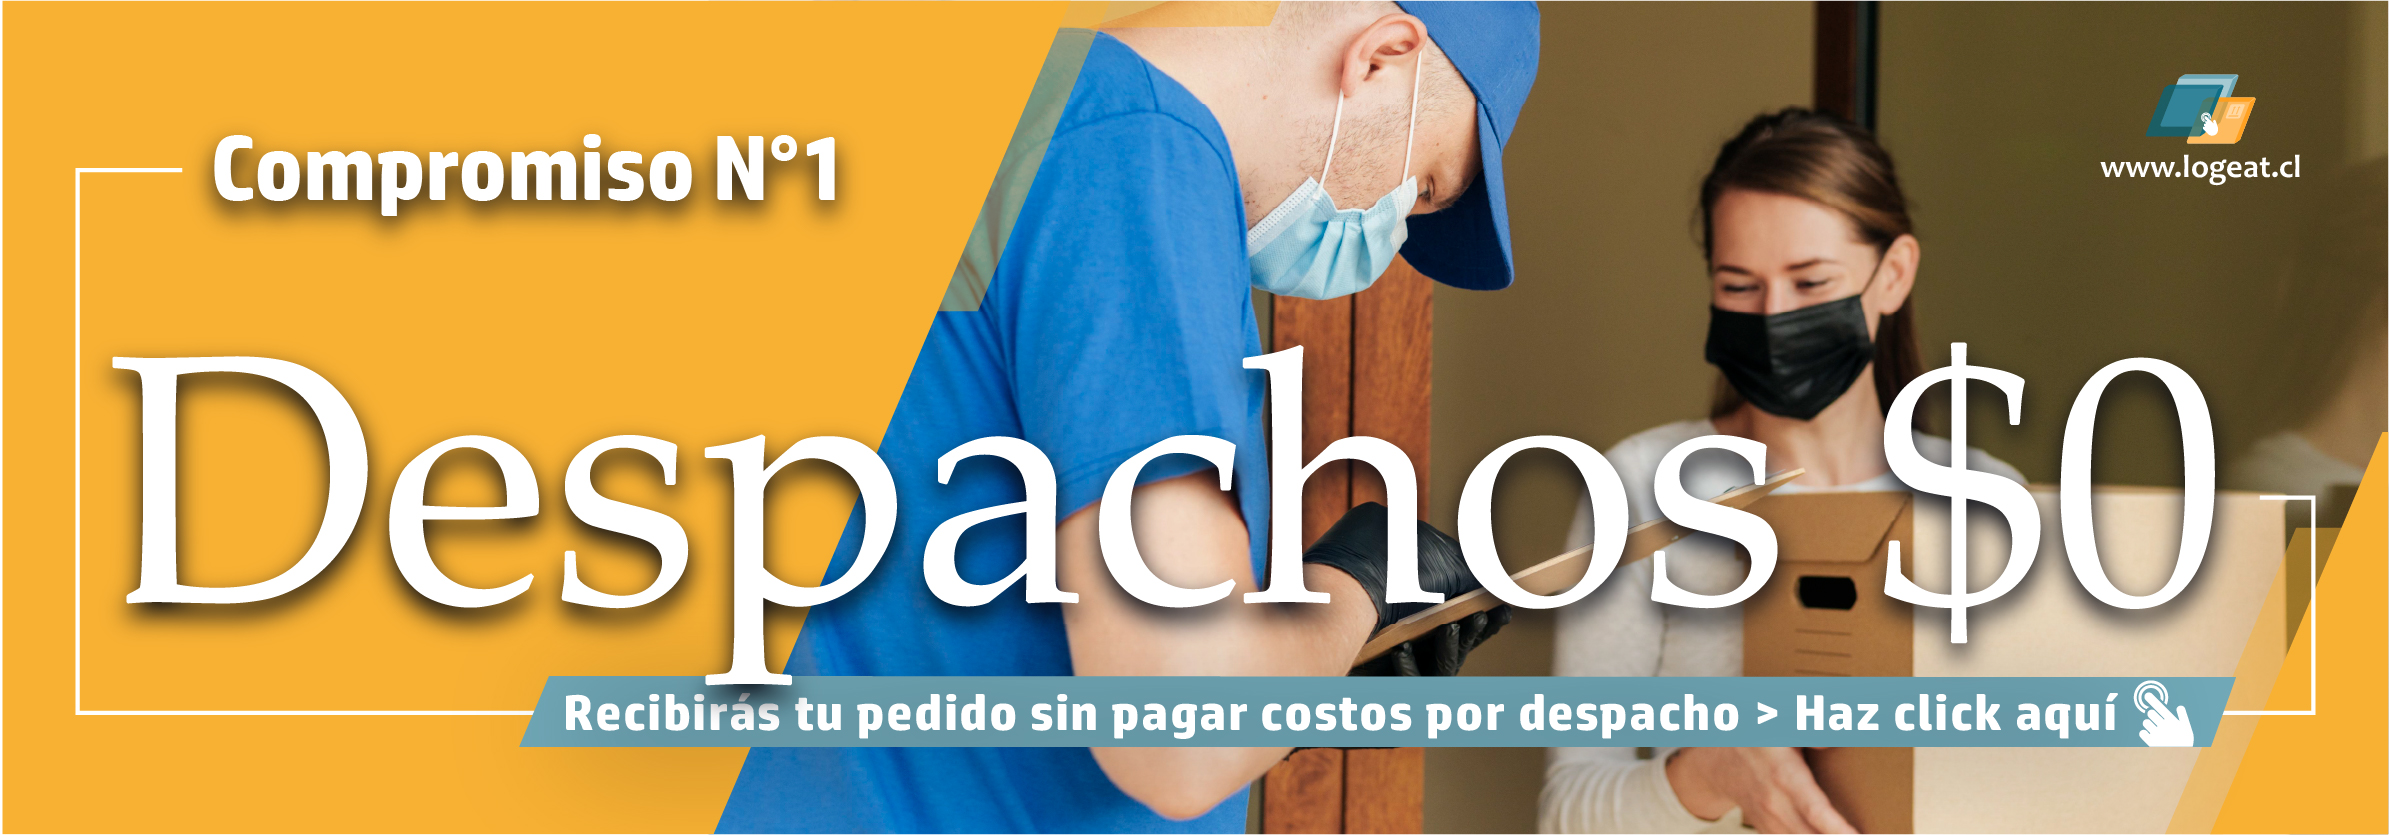 Despachos__0_BannerDespachos__0_Banner.jpg